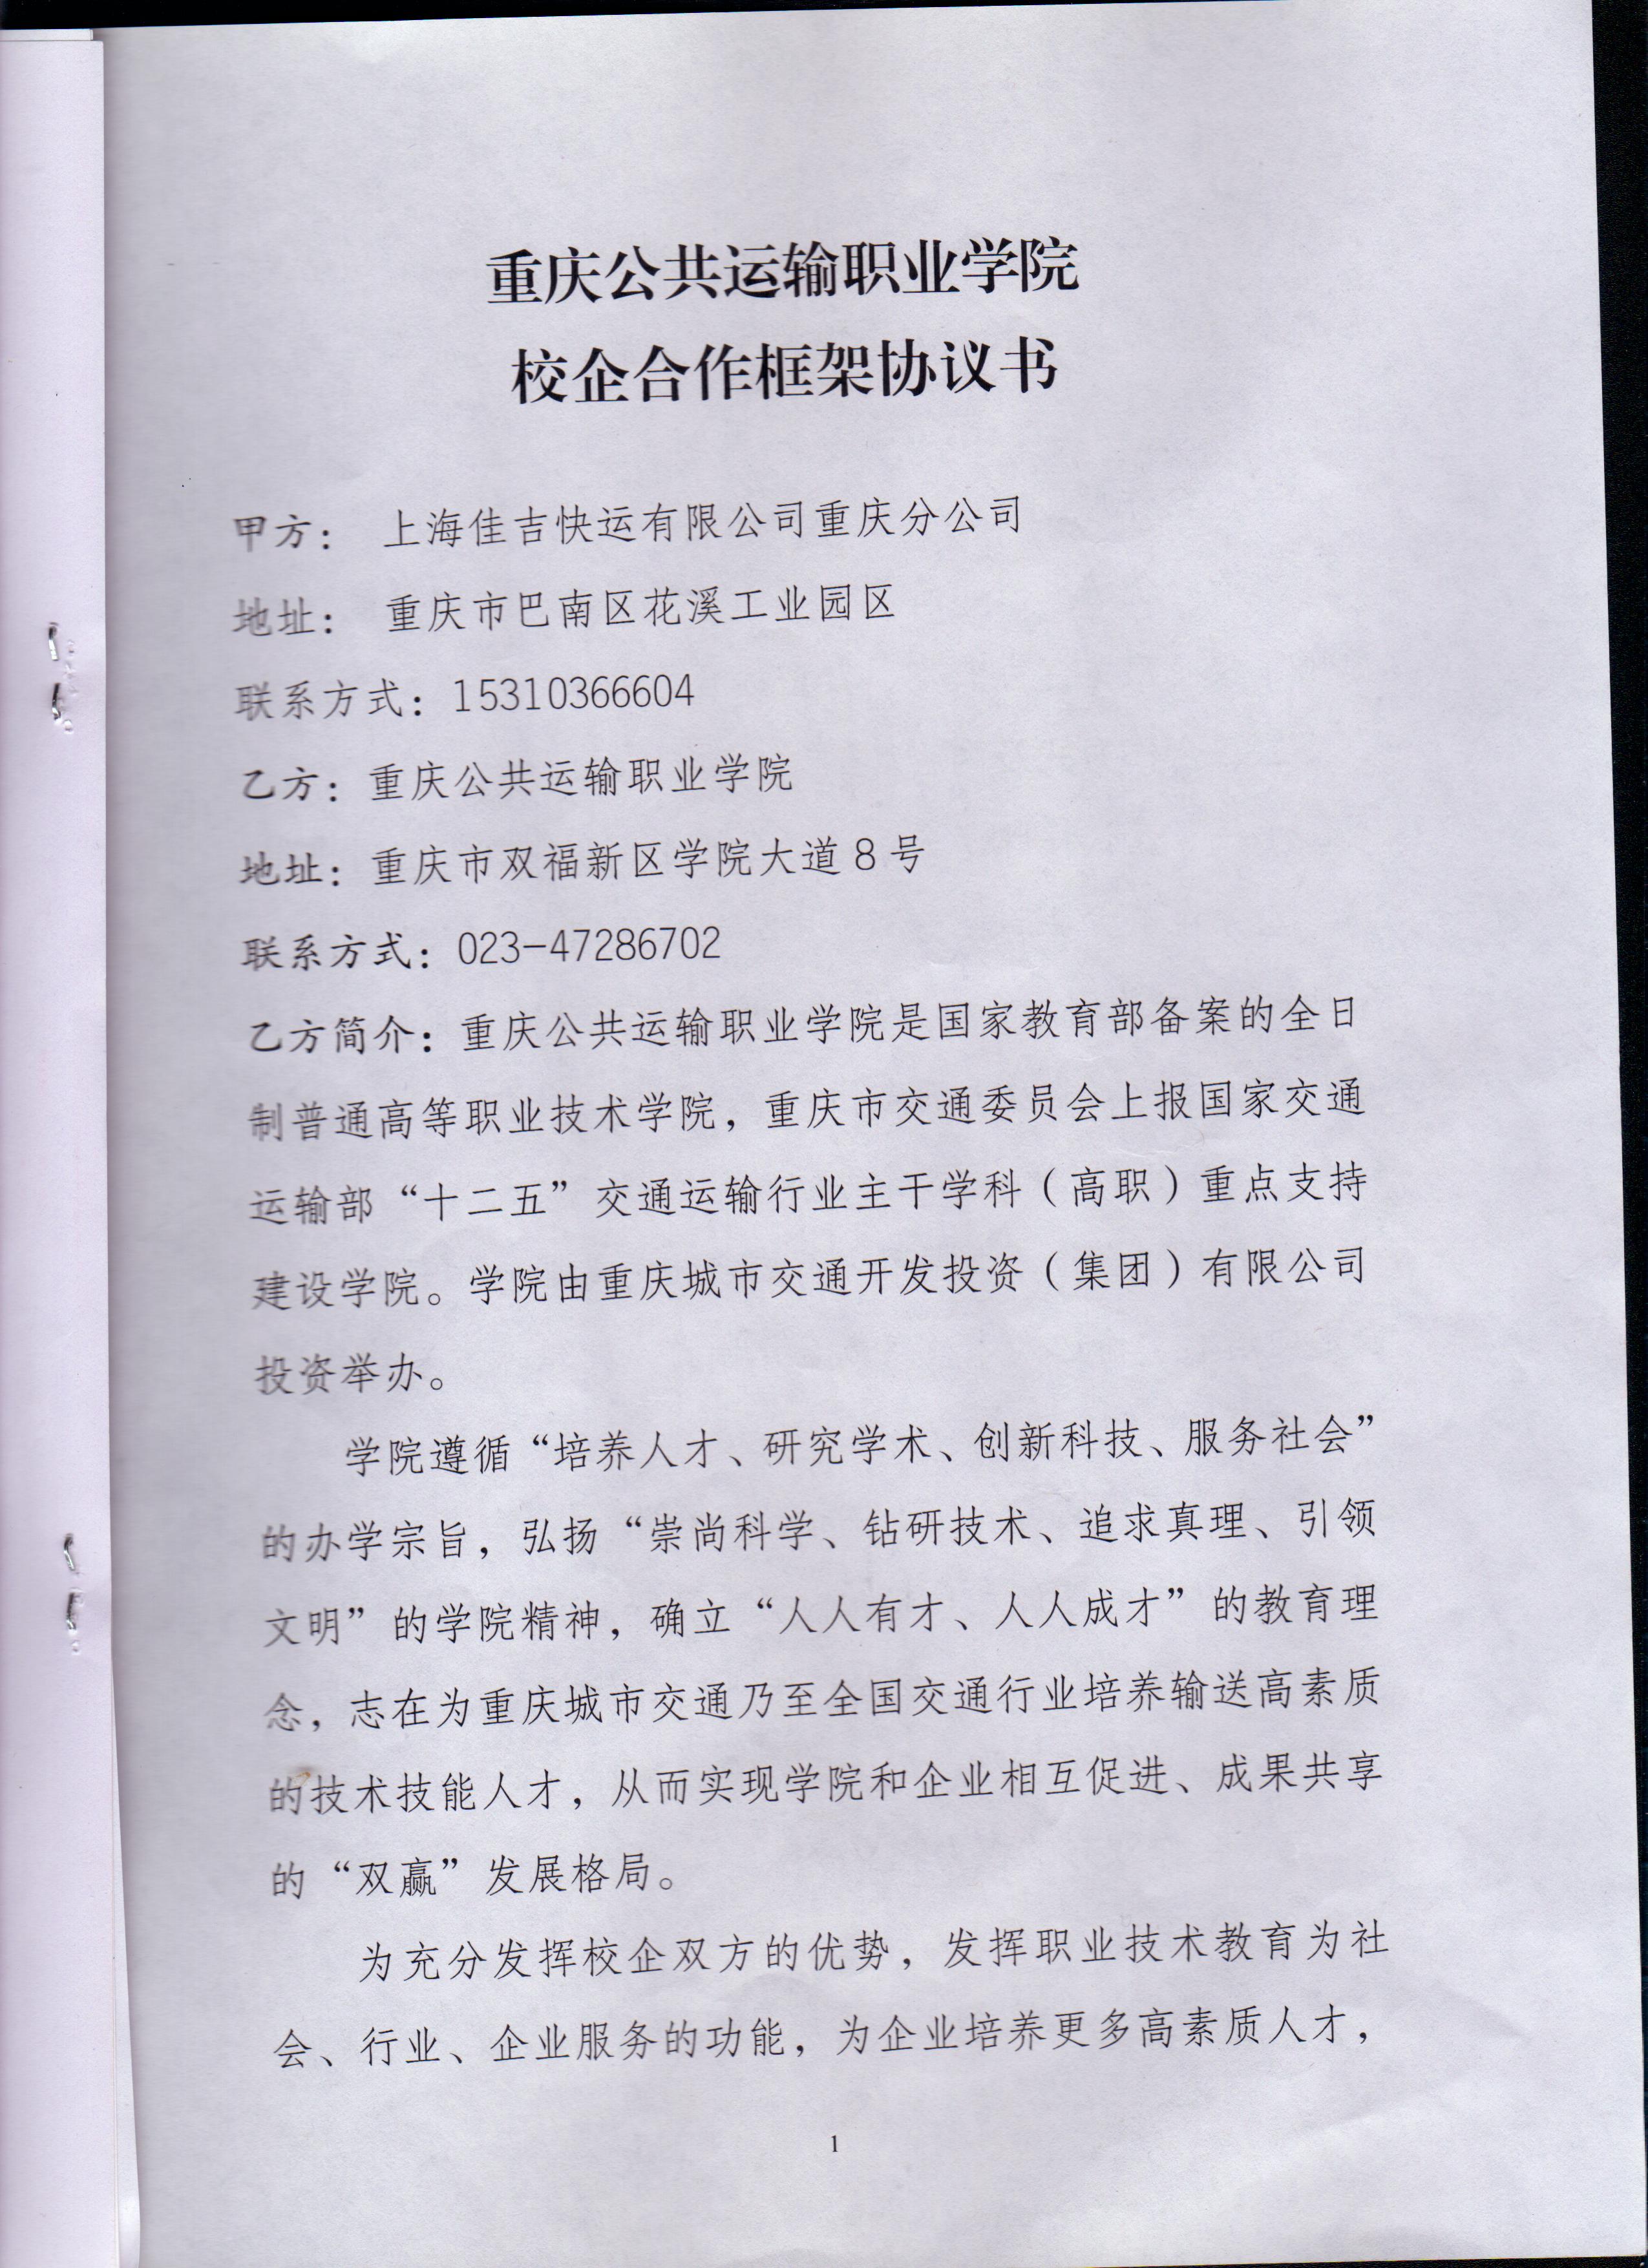 与上海佳吉快运有限公司重庆分公司校企合作框架书